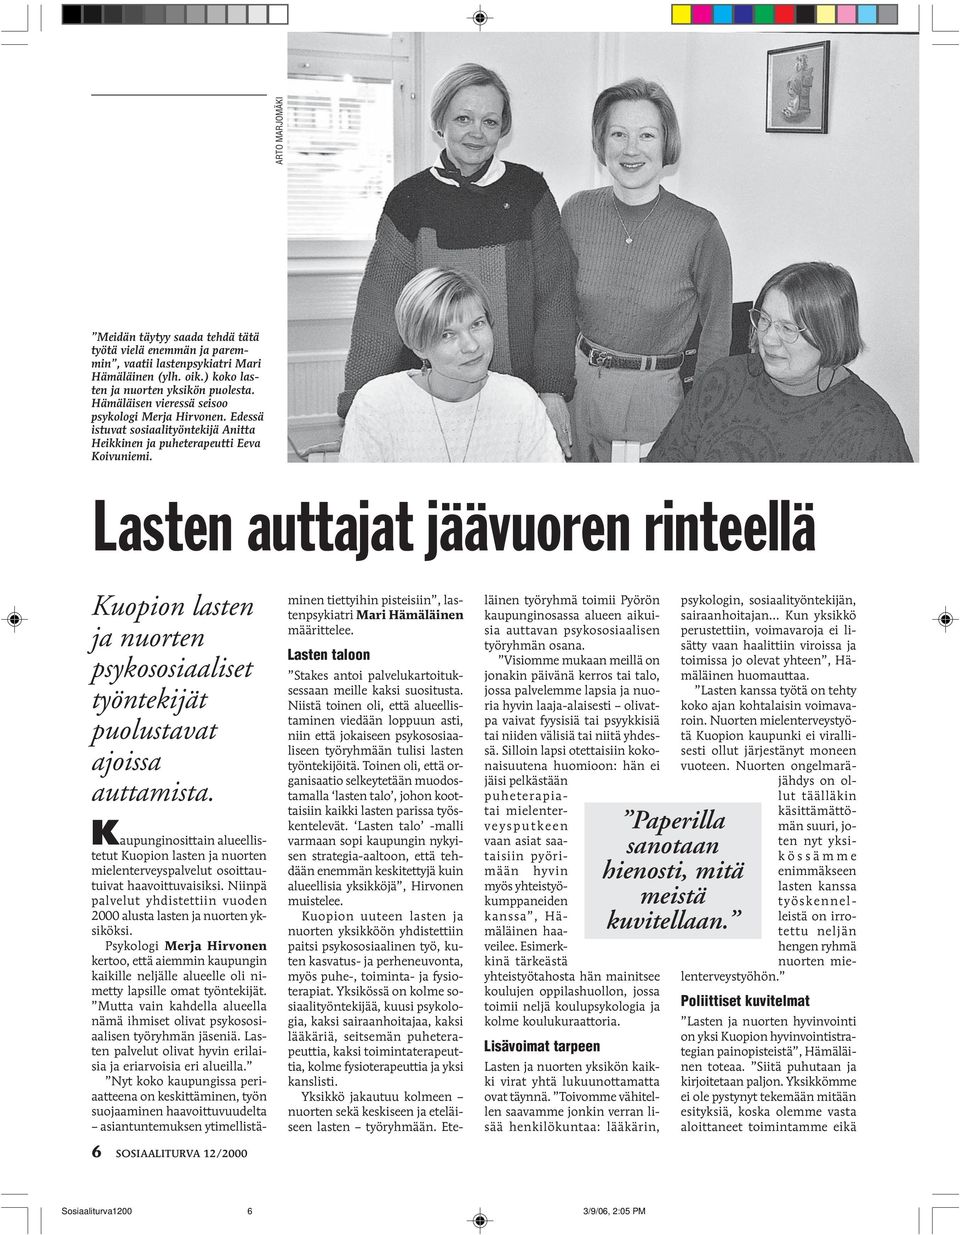 Lasten auttajat jäävuoren rinteellä Kuopion lasten ja nuorten psykososiaaliset työntekijät puolustavat ajoissa auttamista.